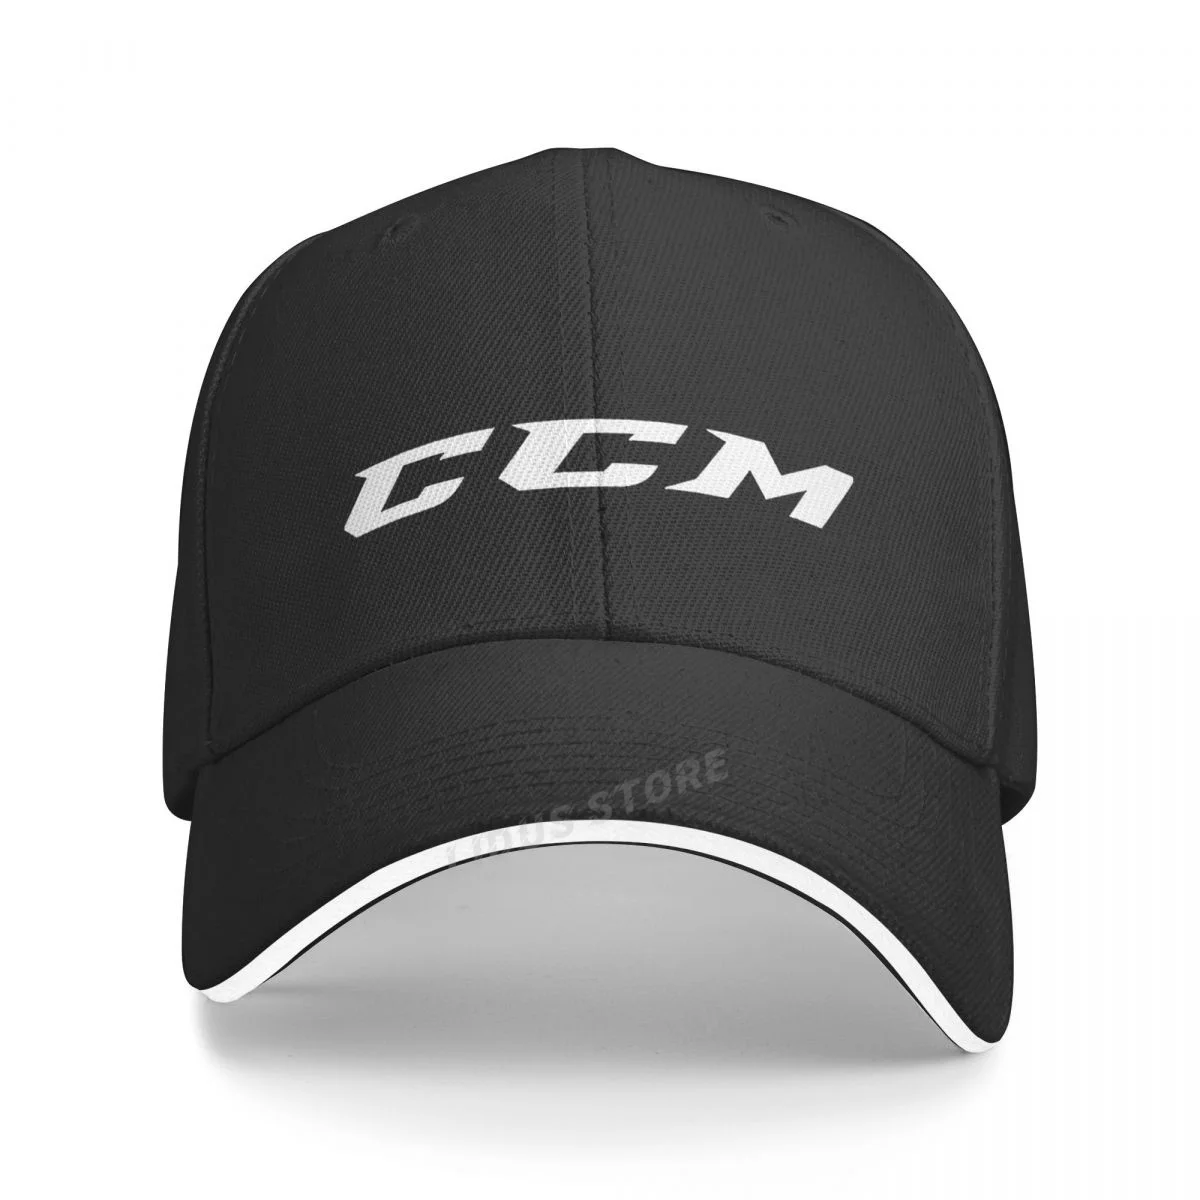 Fashion Hat CCM Baseball Cap Men Women Adjustable Cool CCM Logo Hats Unisex Outdoor Caps